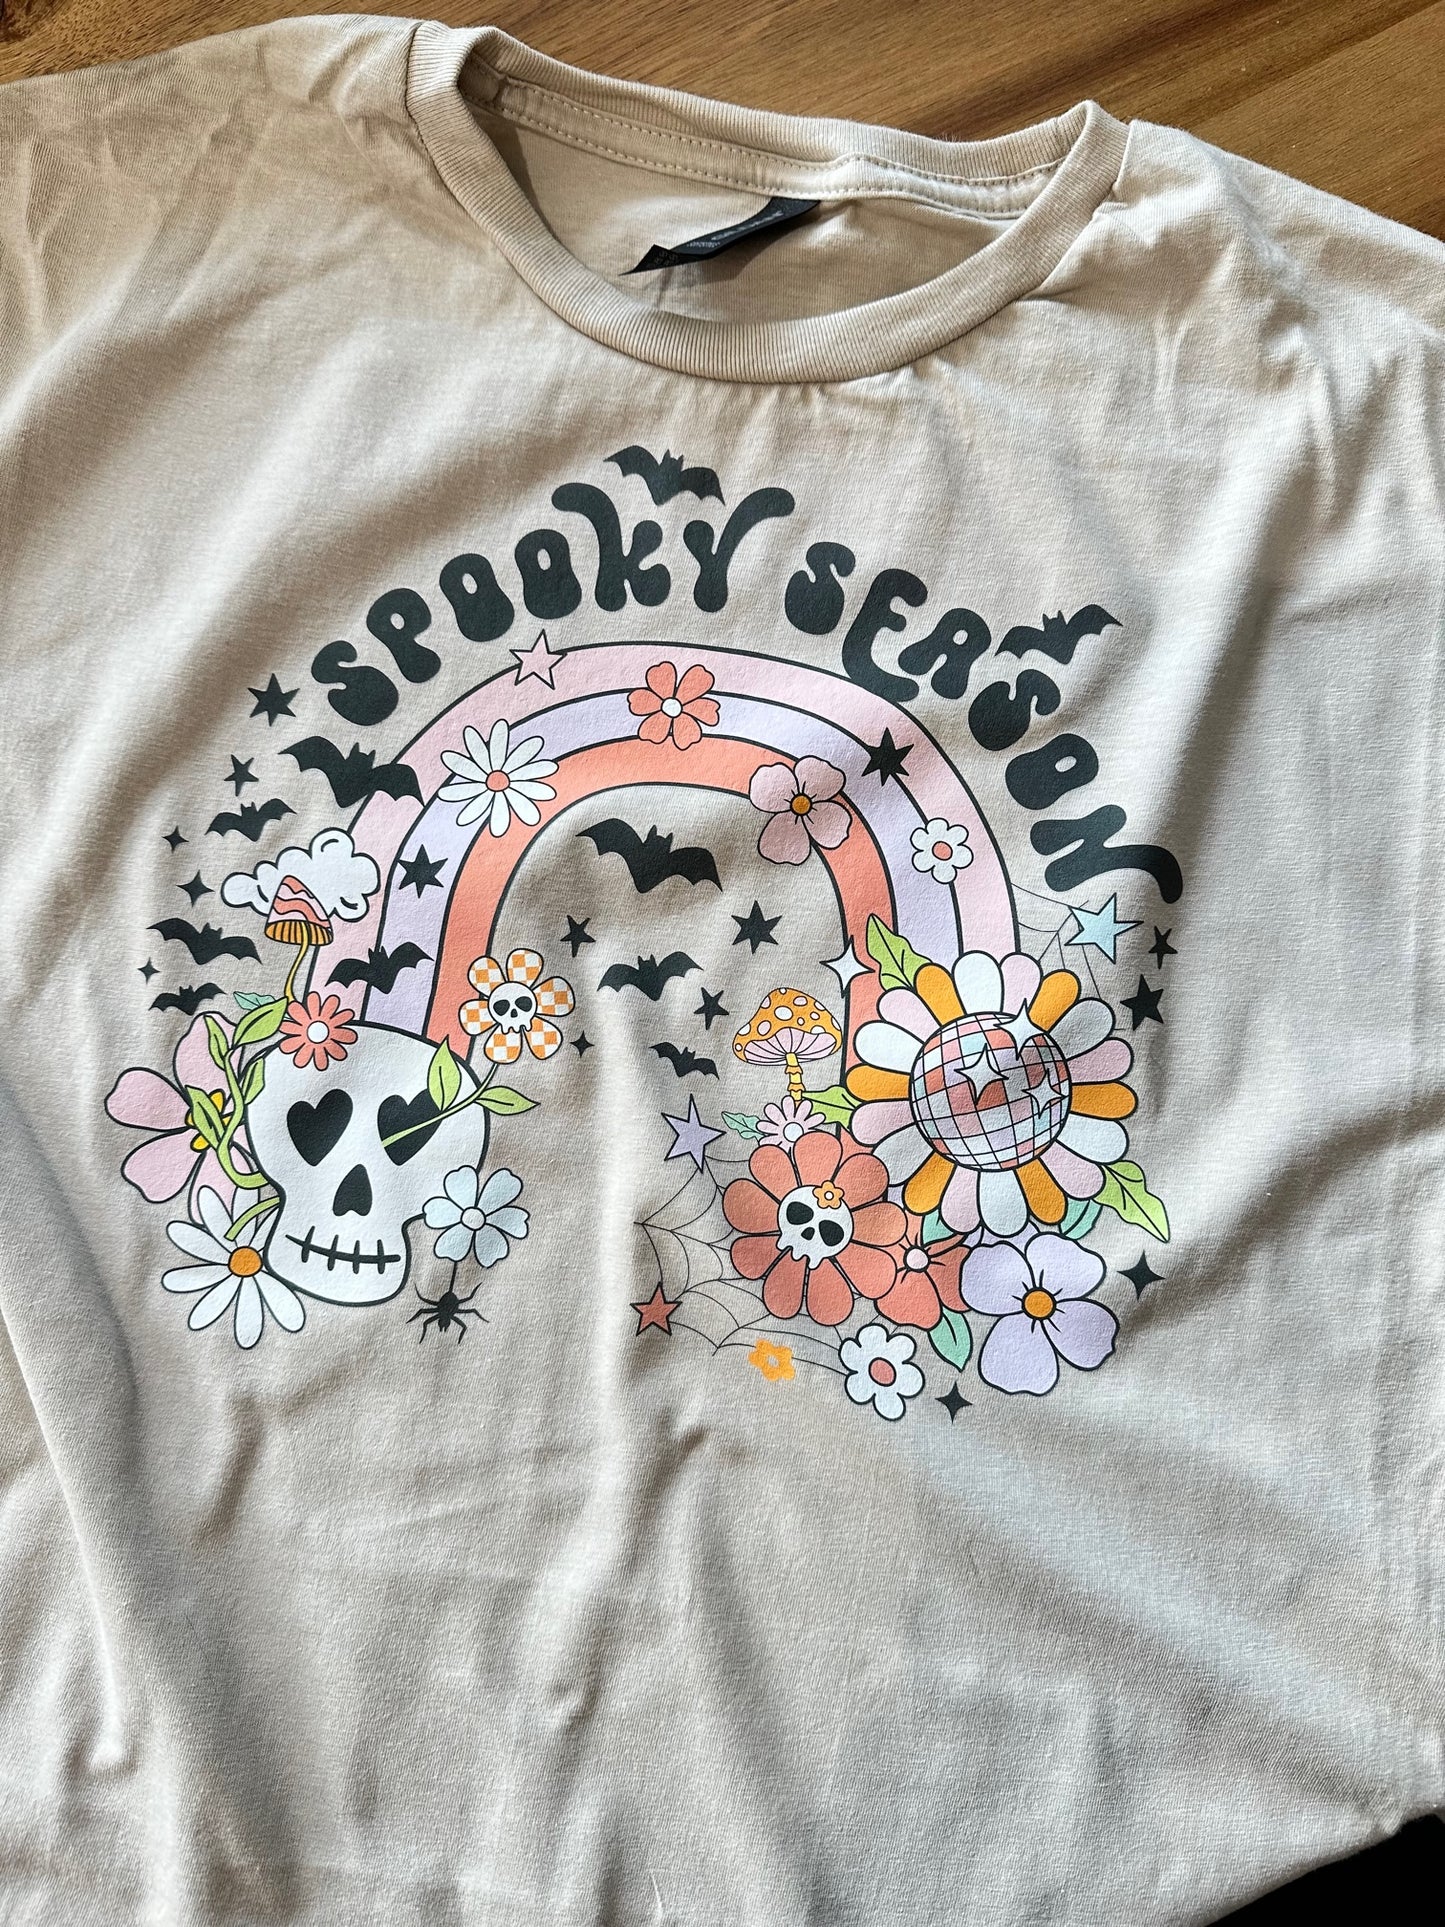 Spooky season Tshirt